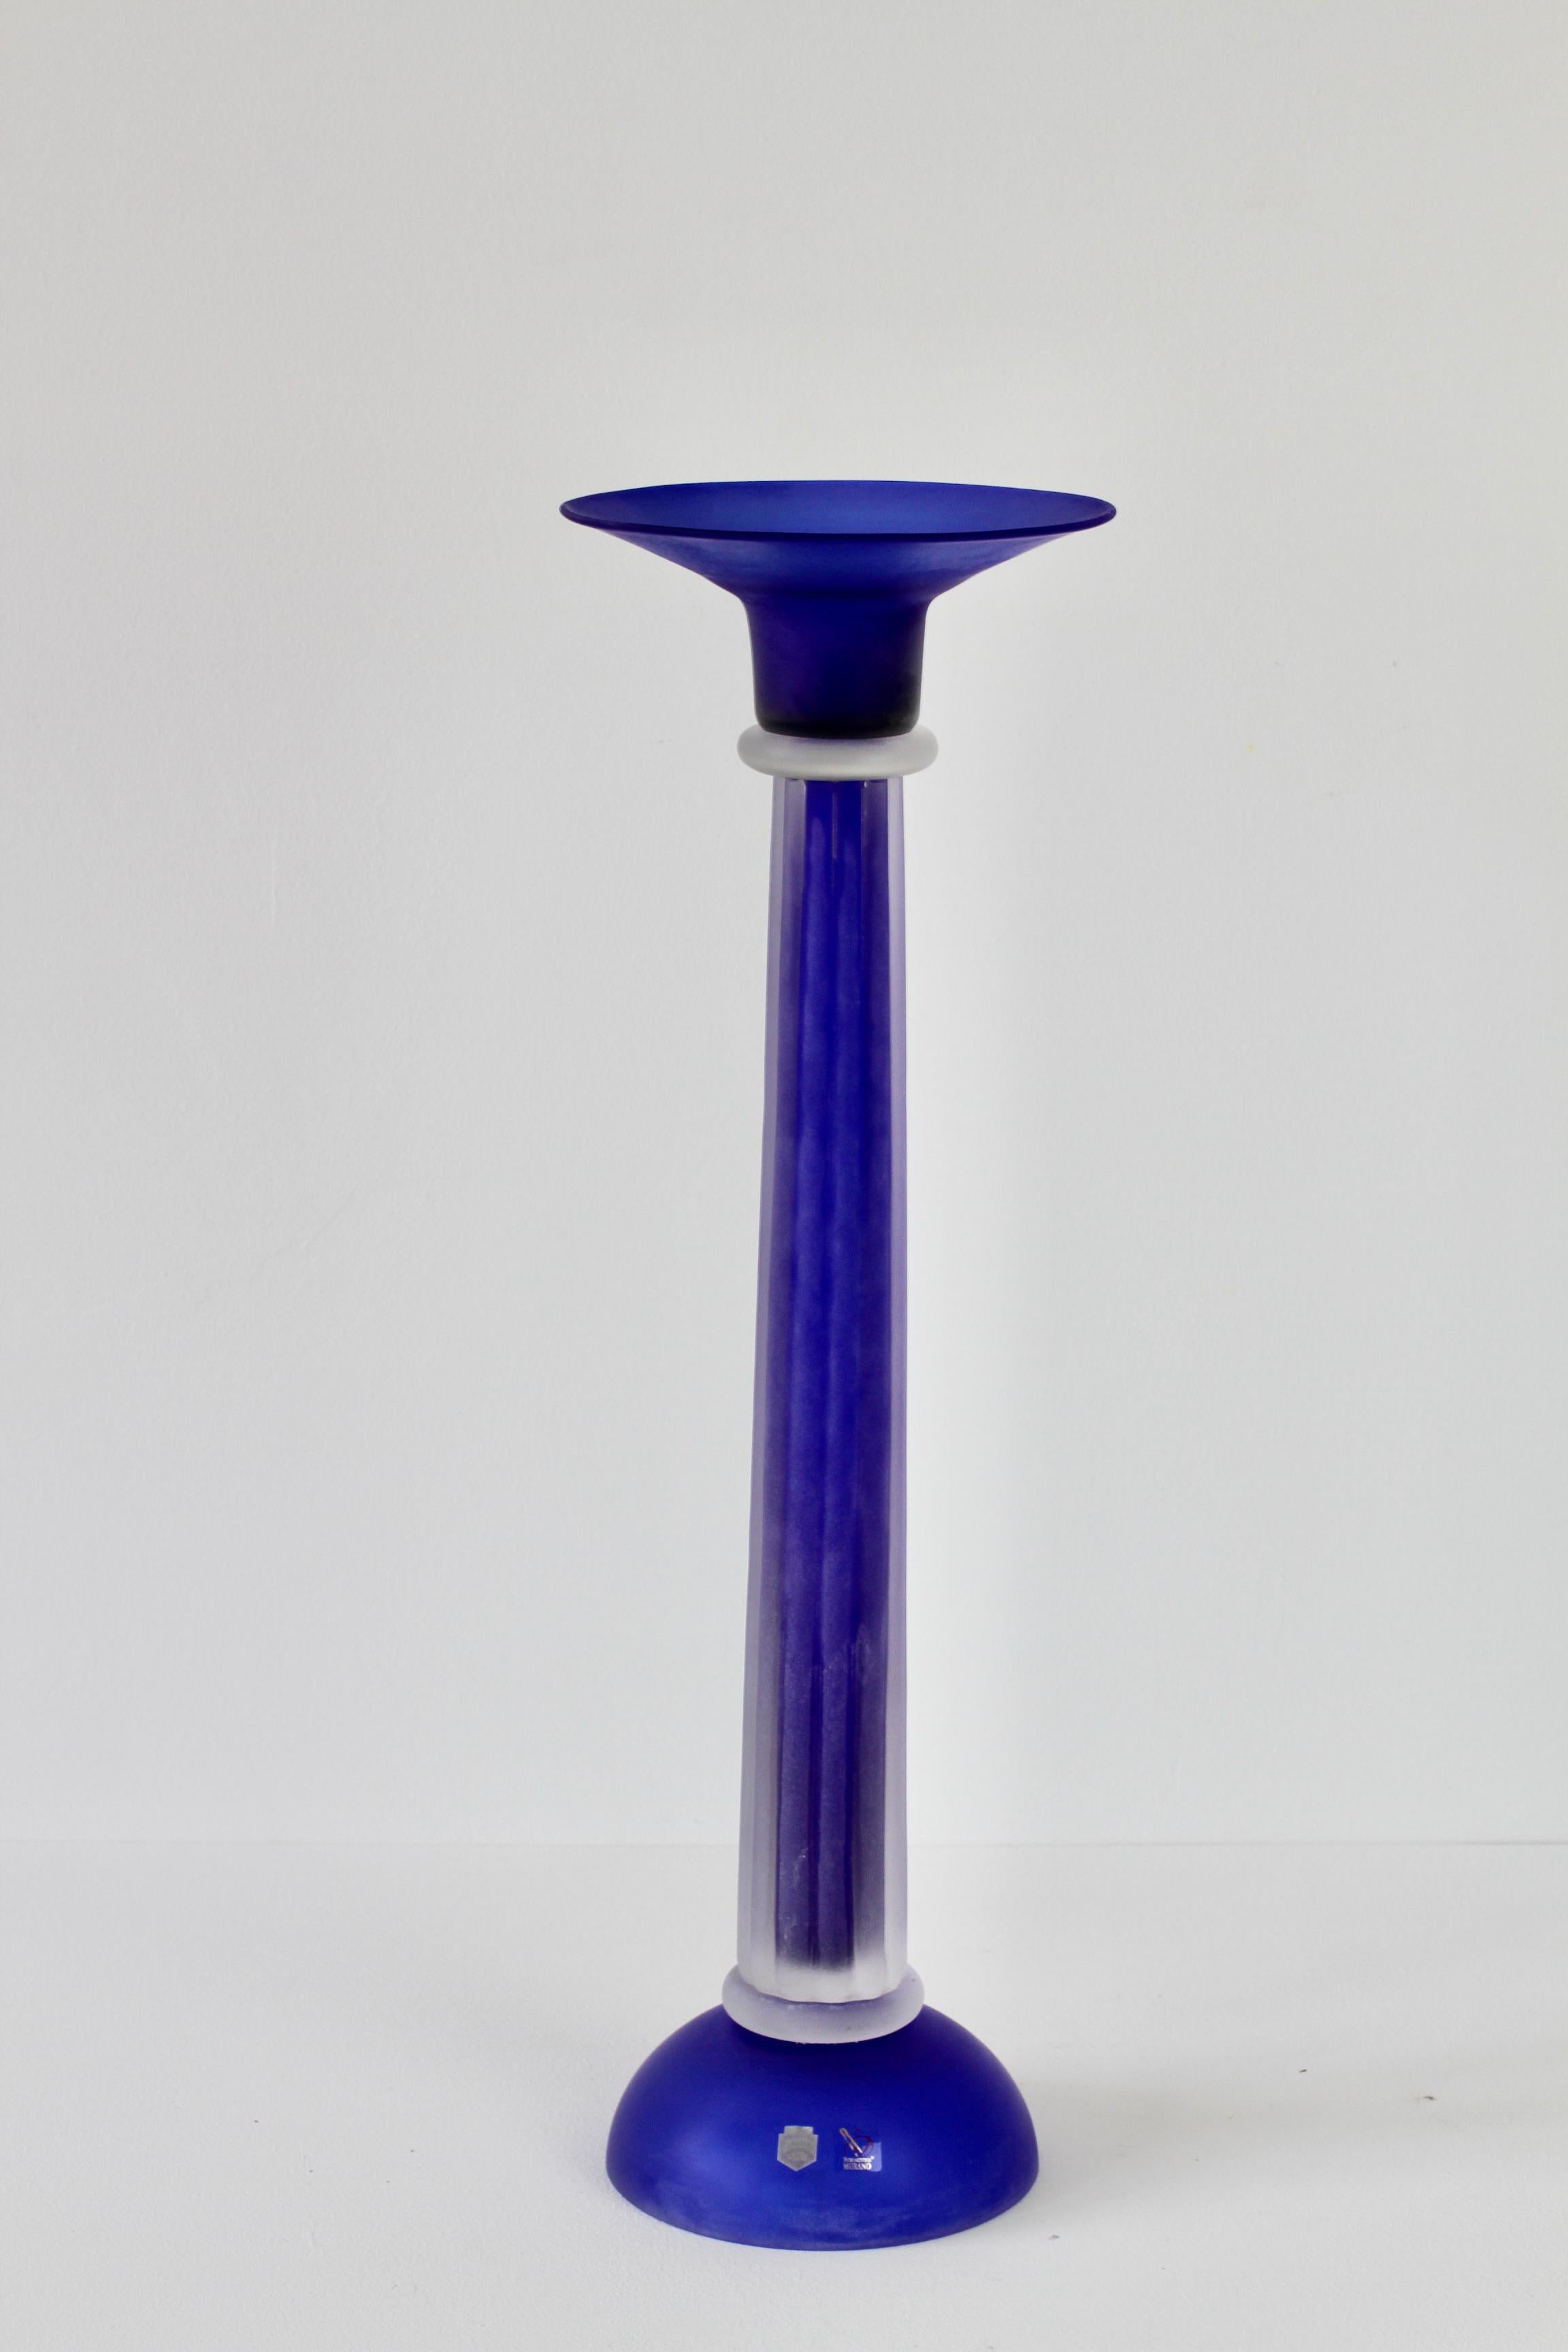 Monumentaler, hoher und riesiger kobaltblauer (farbiger) Kerzenhalter aus italienischem Murano-Glas von Cenedese. Schöne Handwerkskunst und atemberaubende helle kobaltblaue Farbe mit einem geriffelten Stiel in klarem Glas, die entweder die 